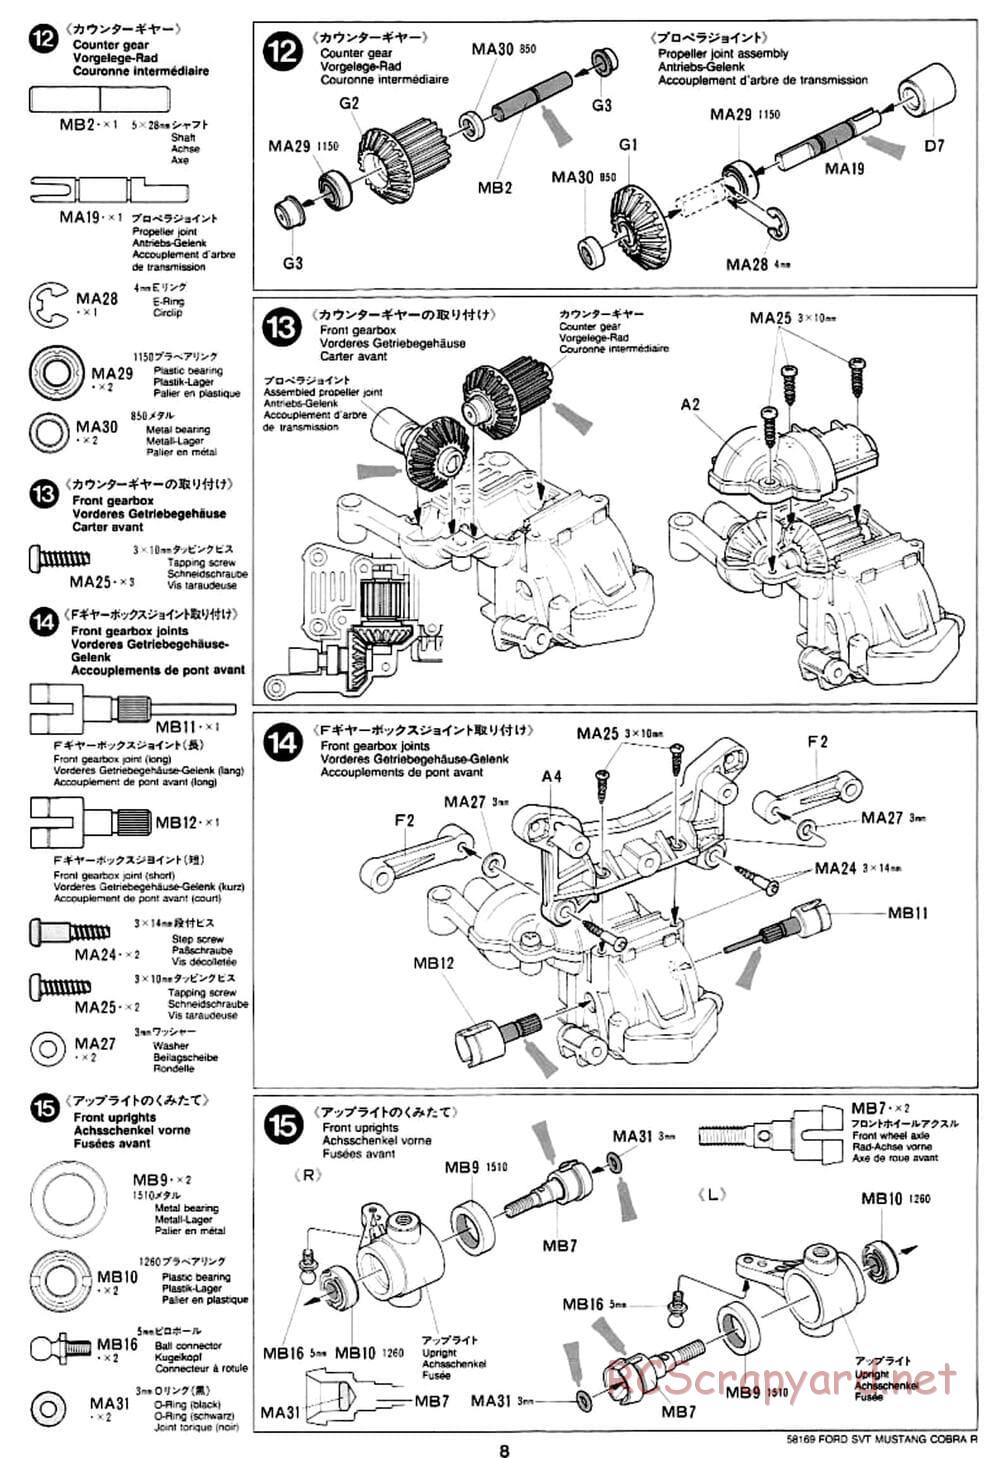 Tamiya - Ford SVT Mustang Cobra-R - TA-02 Chassis - Manual - Page 8